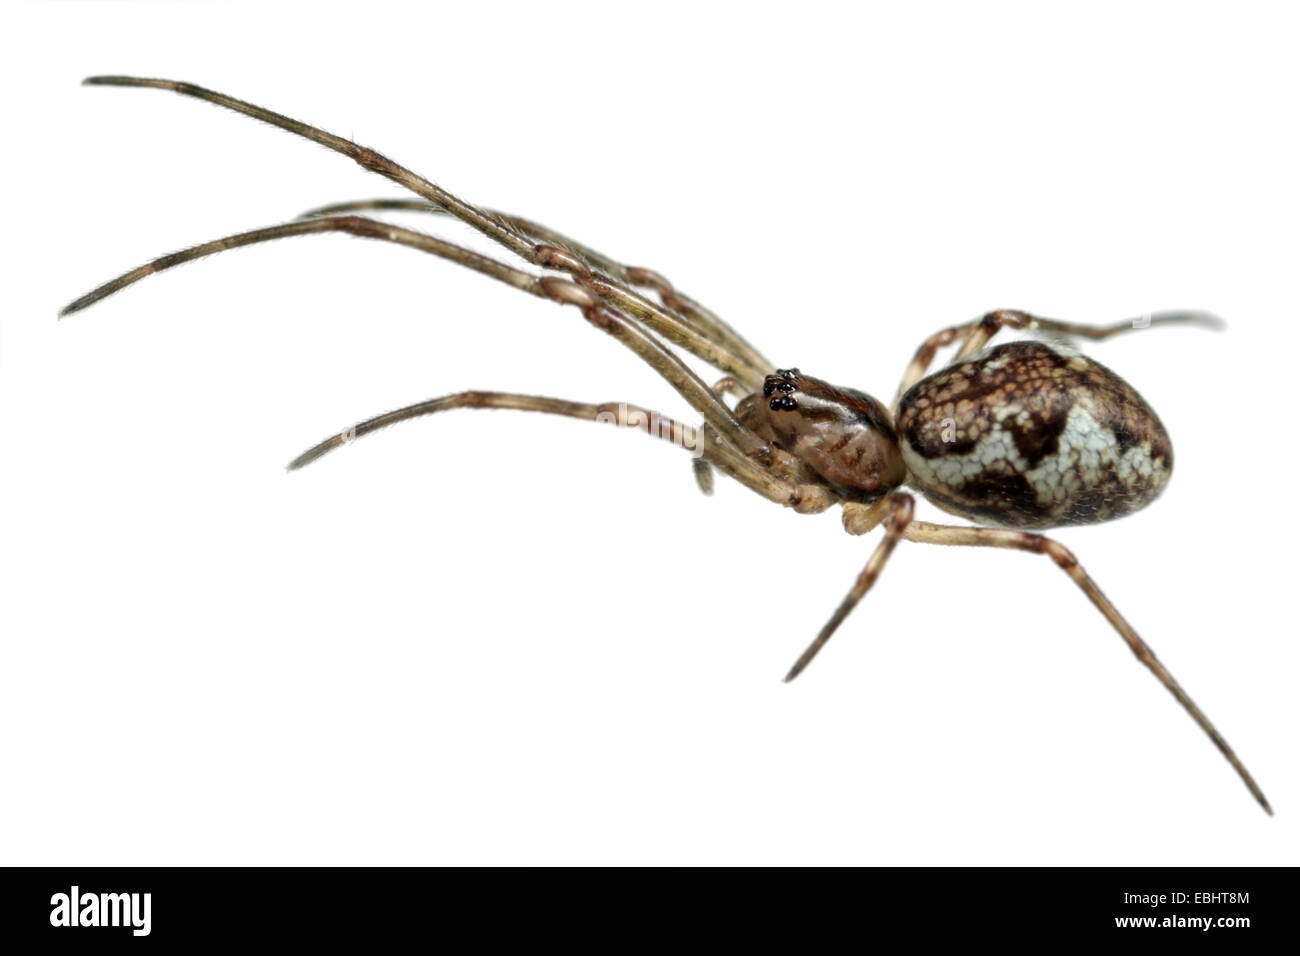 Tetragnatha obtusa femelle araignée sur fond blanc. Famille des Tetragnathidae, orb plate tisserands. Banque D'Images